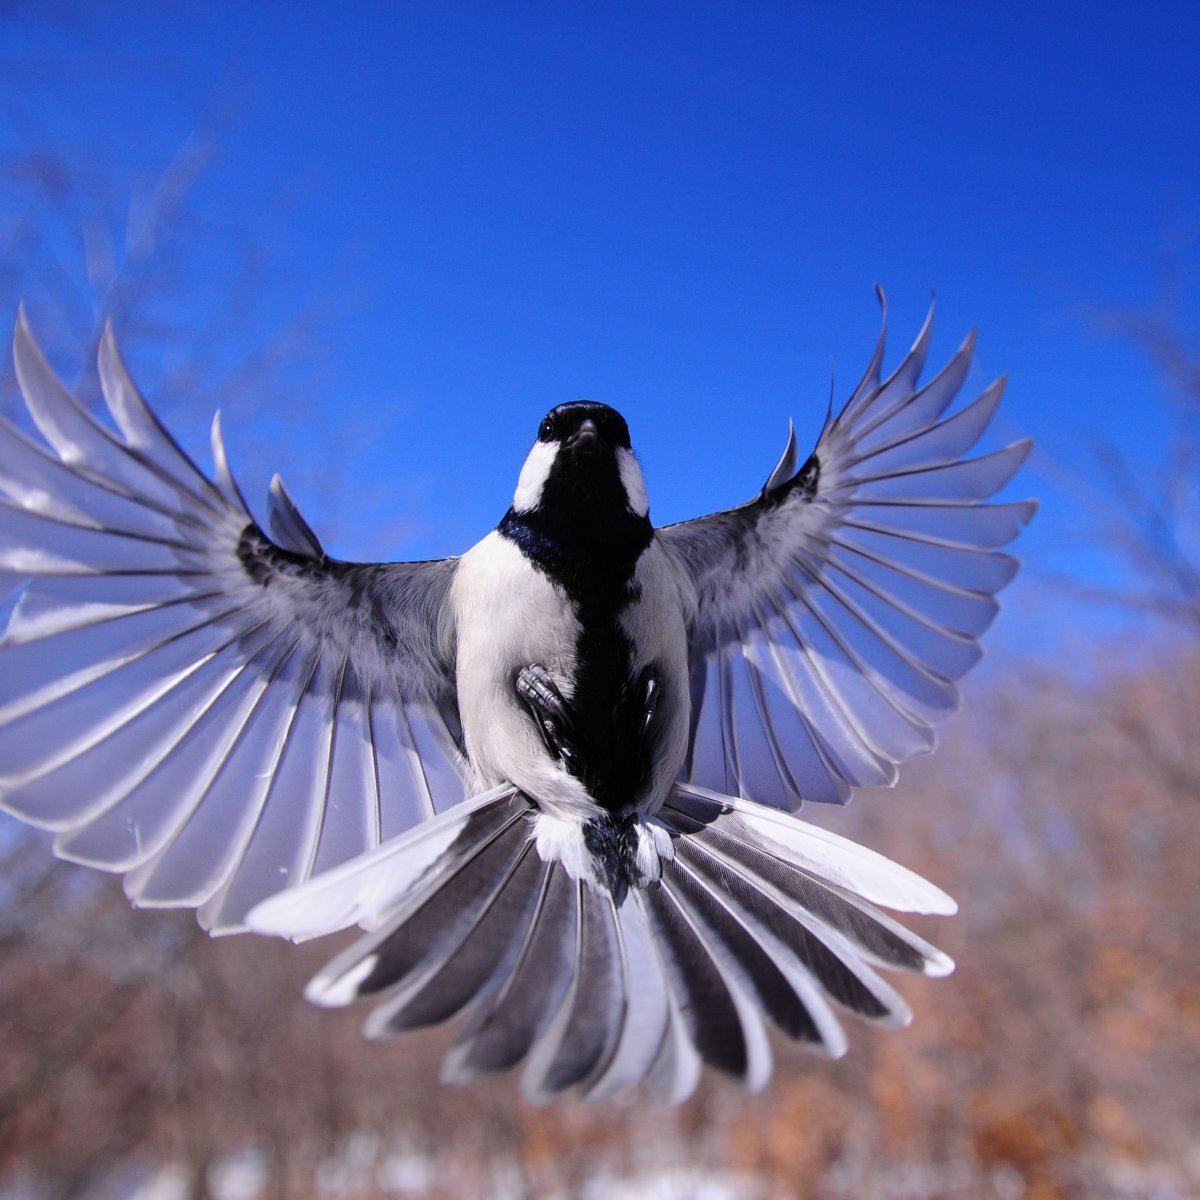 Птица стала на крыло. Птица в полете. Крыло птицы. Птица с распахнутыми крыльями. Крылья птицы в полете.